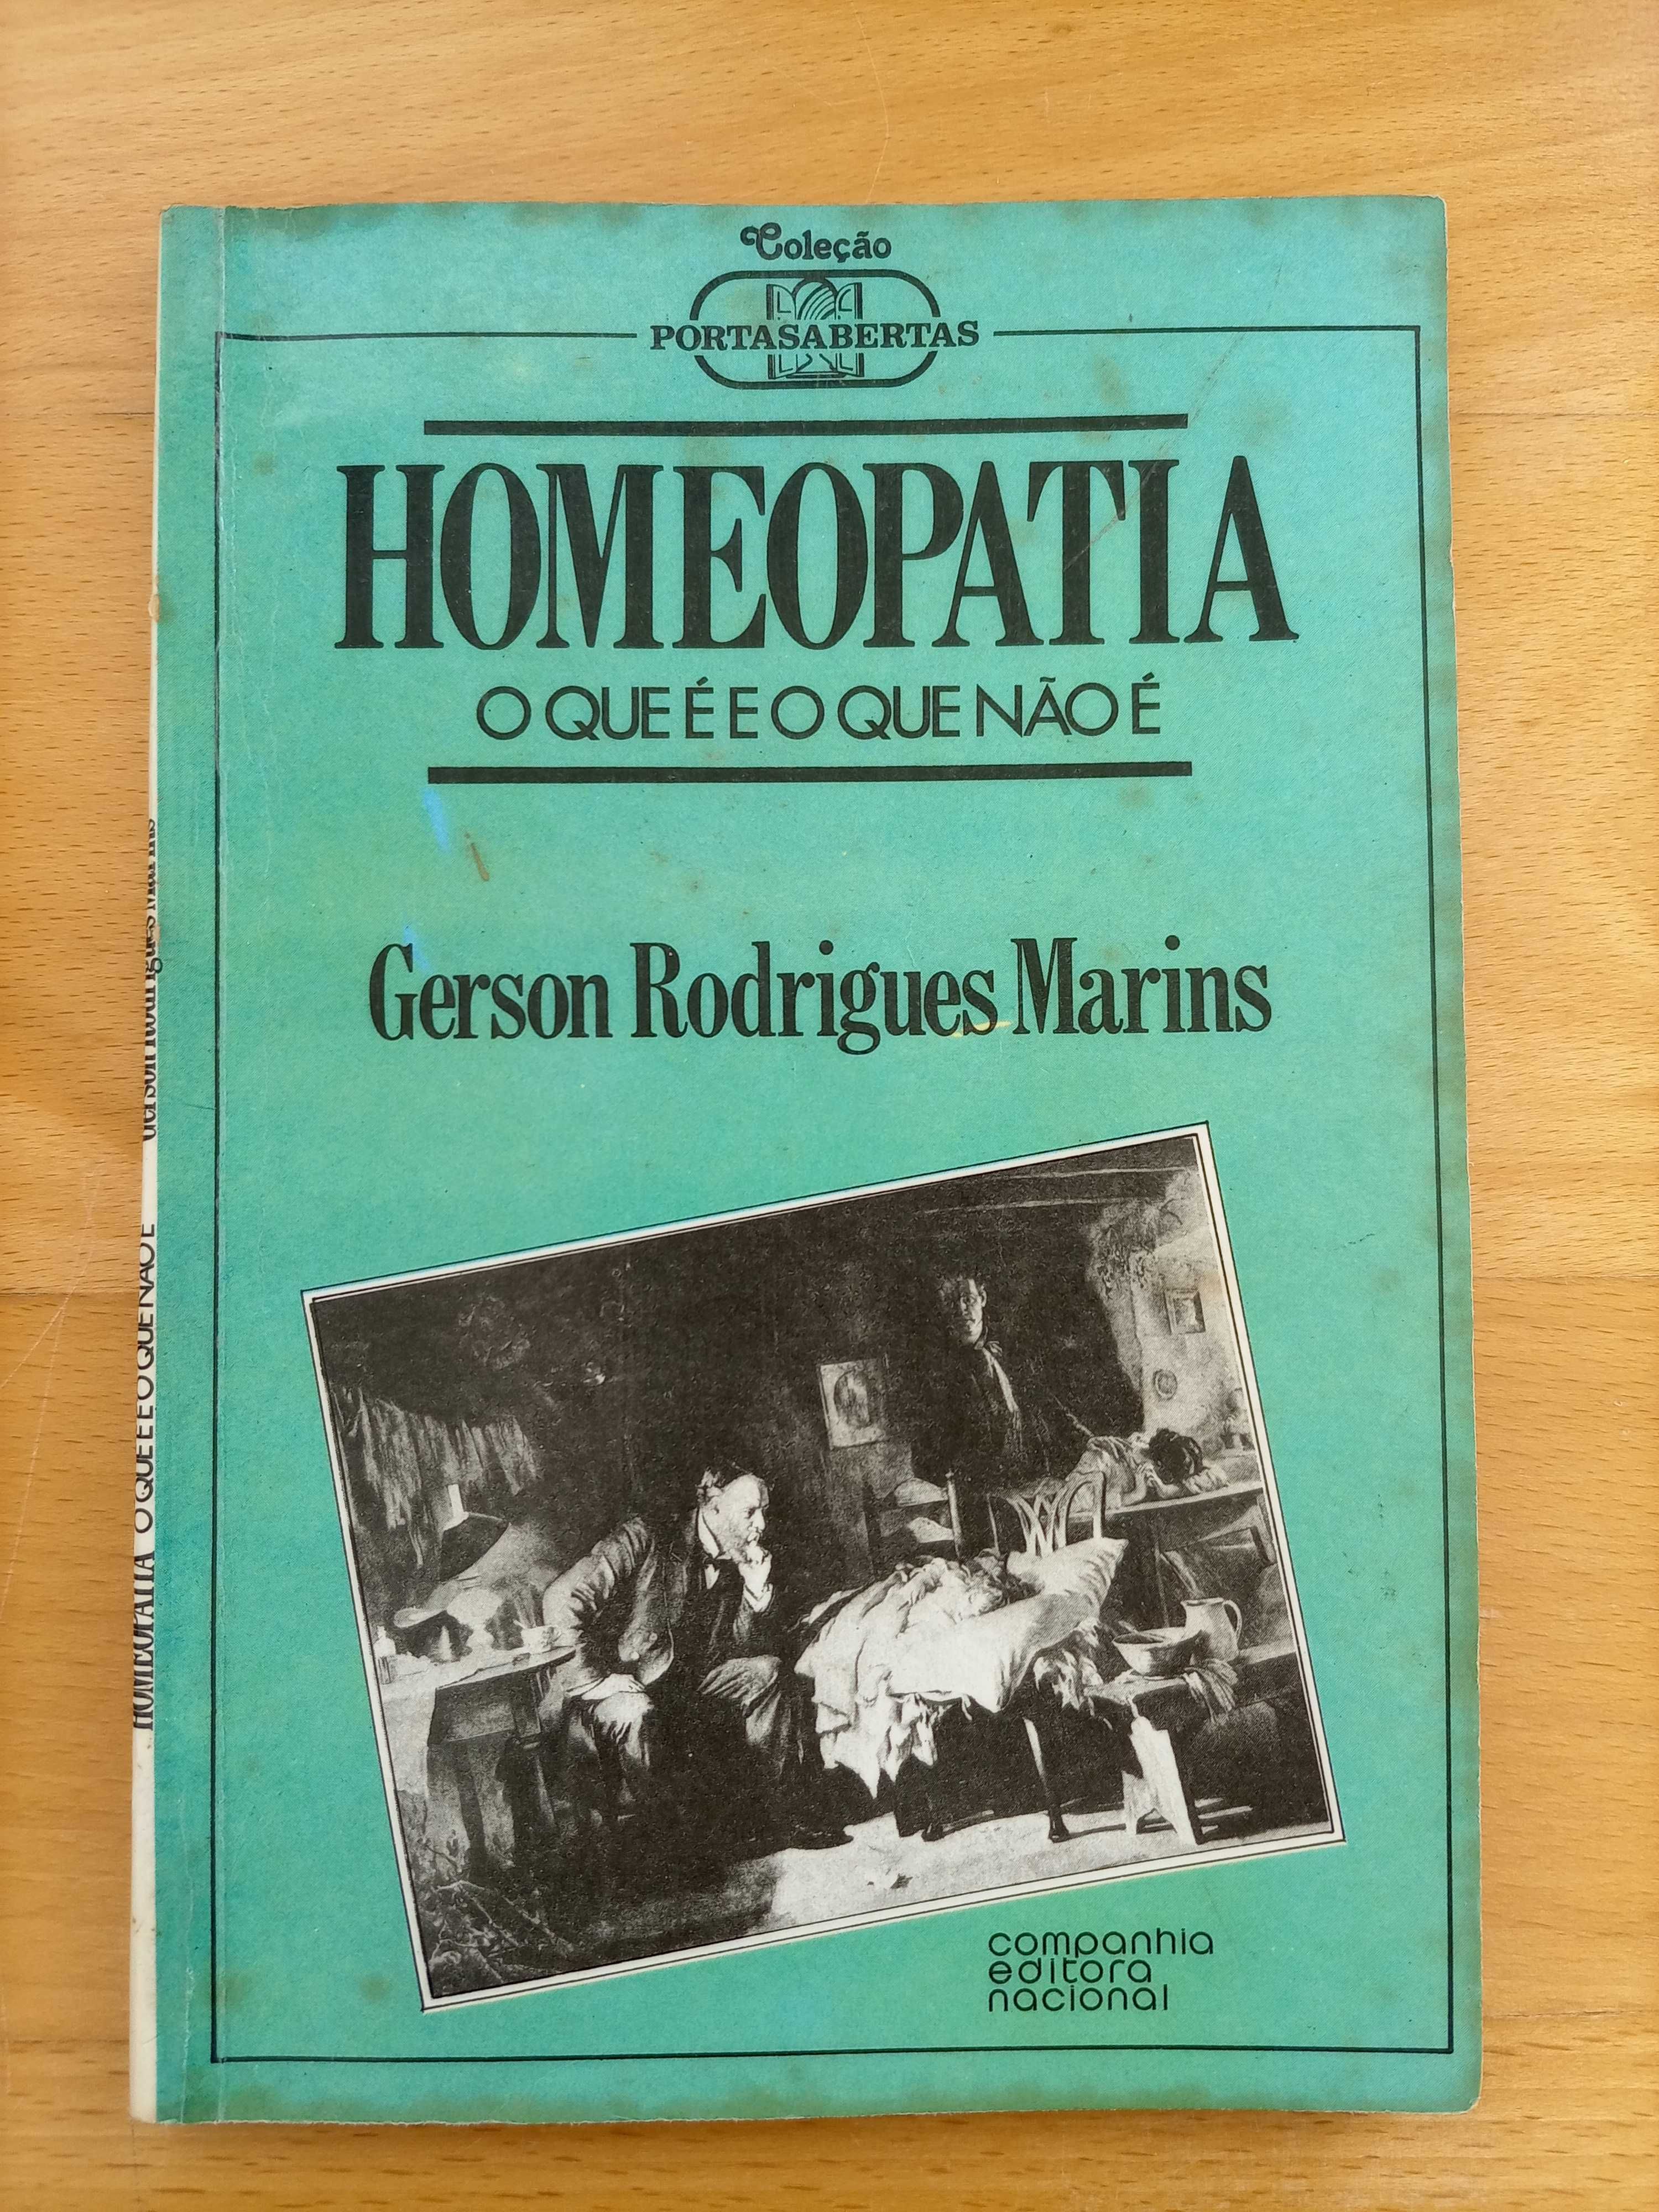 Livro "Homeopatia - O que é e o que não é" - Antigo